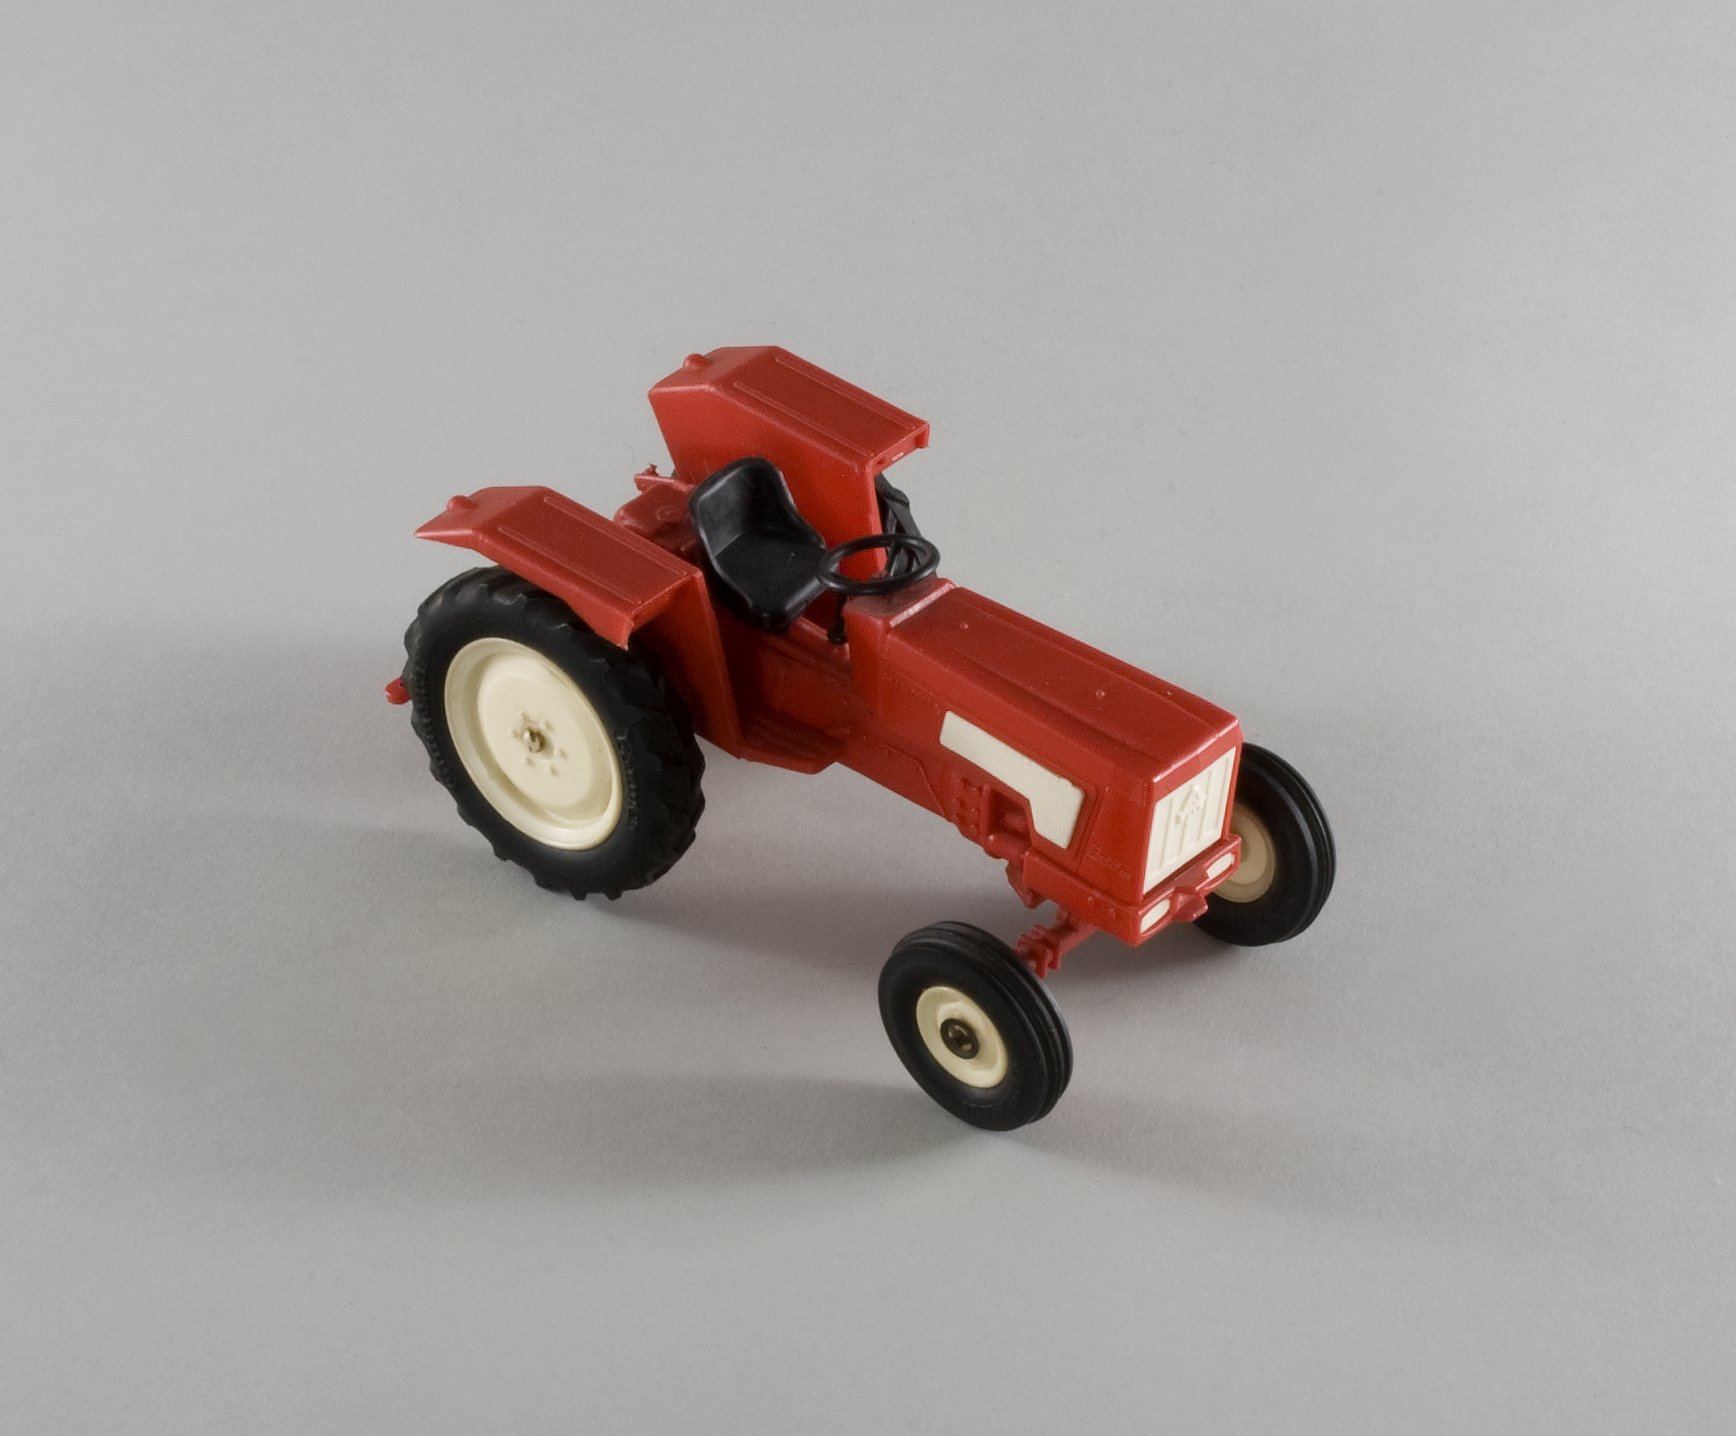 Spielzeugmodell: "Hanomag" - Traktor Perfekt 400 (Stiftung Domäne Dahlem - Landgut und Museum, Weiternutzung nur mit Genehmigung des Museums CC BY-NC-SA)